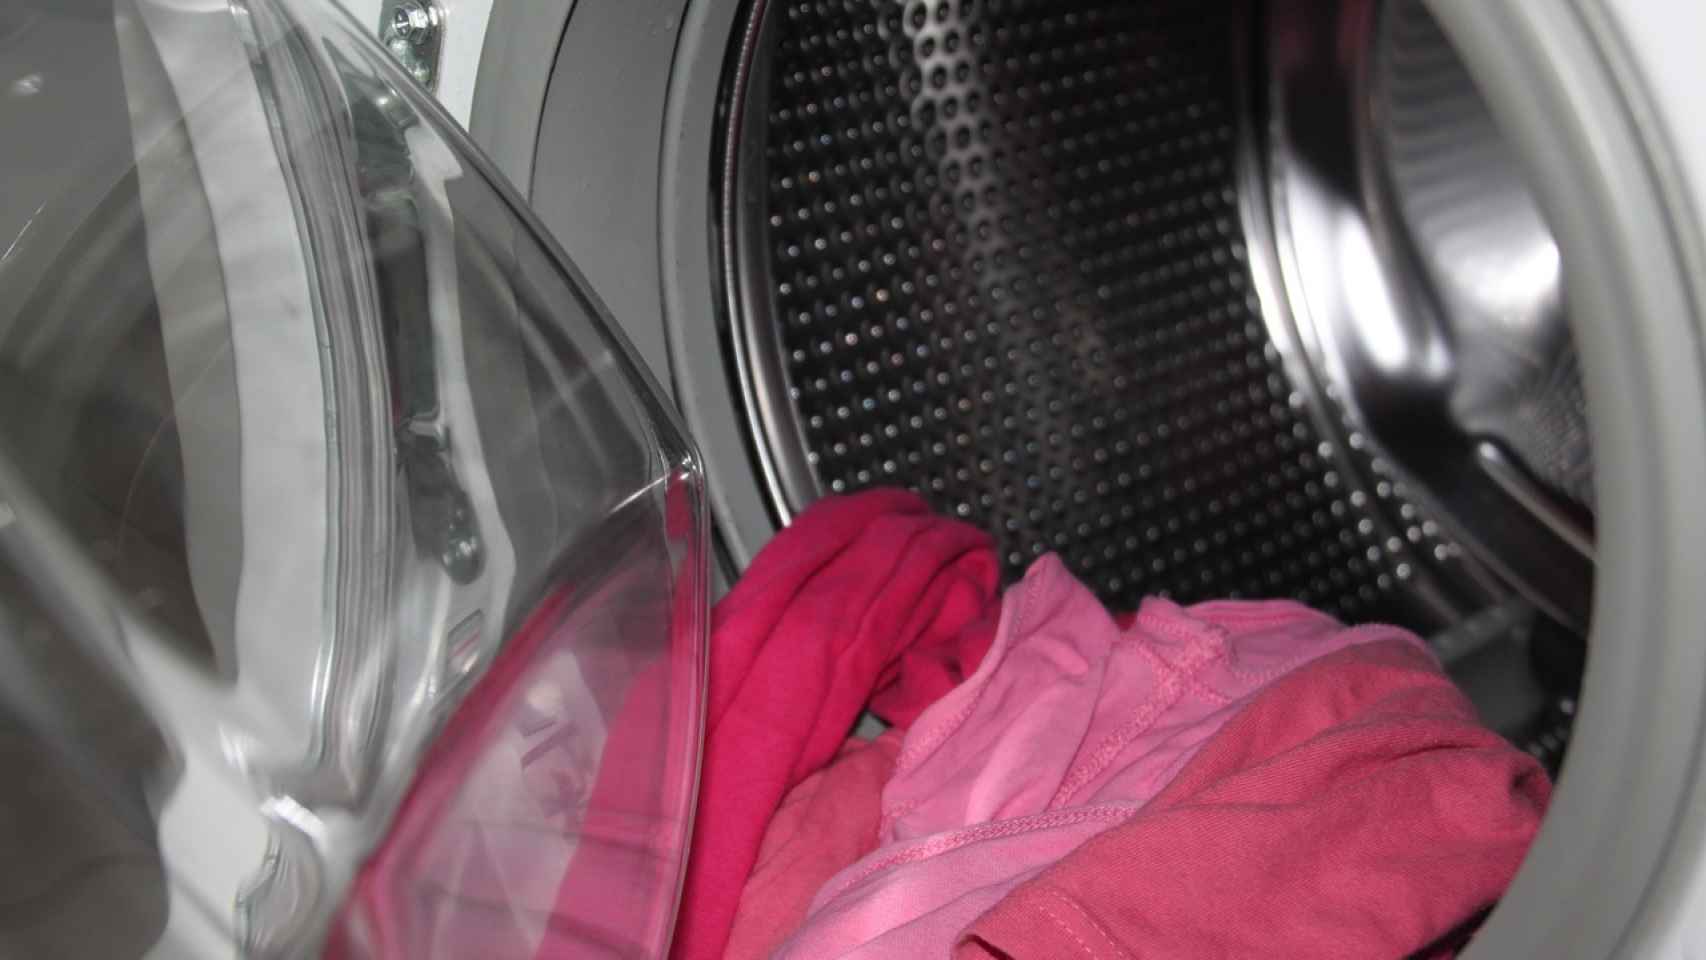 poner una lavadora: instrucciones para el cuidado de tu ropa